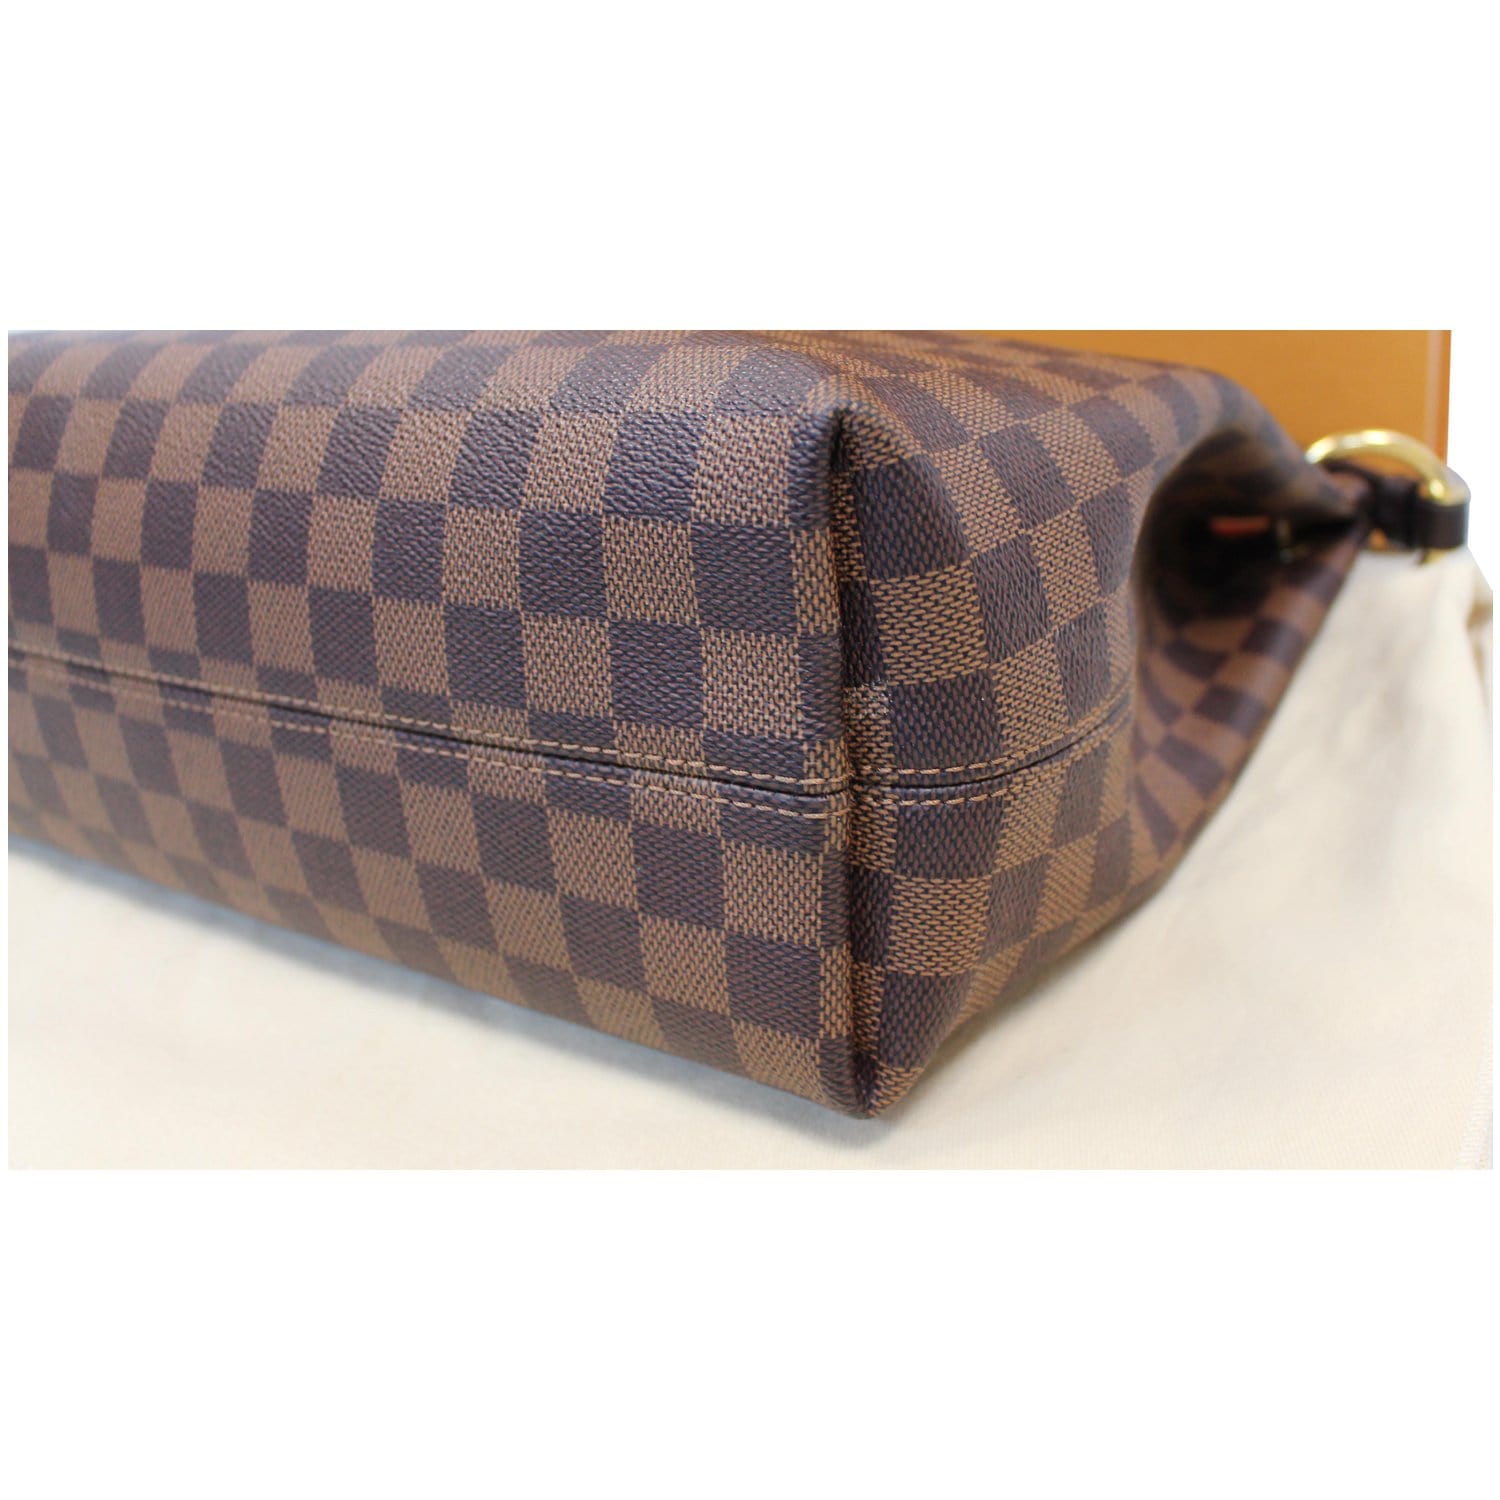 Louis Vuitton, Bags, Louis Vuitton Graceful Pm Damier Ebene Shoulder Bag  Its Like New